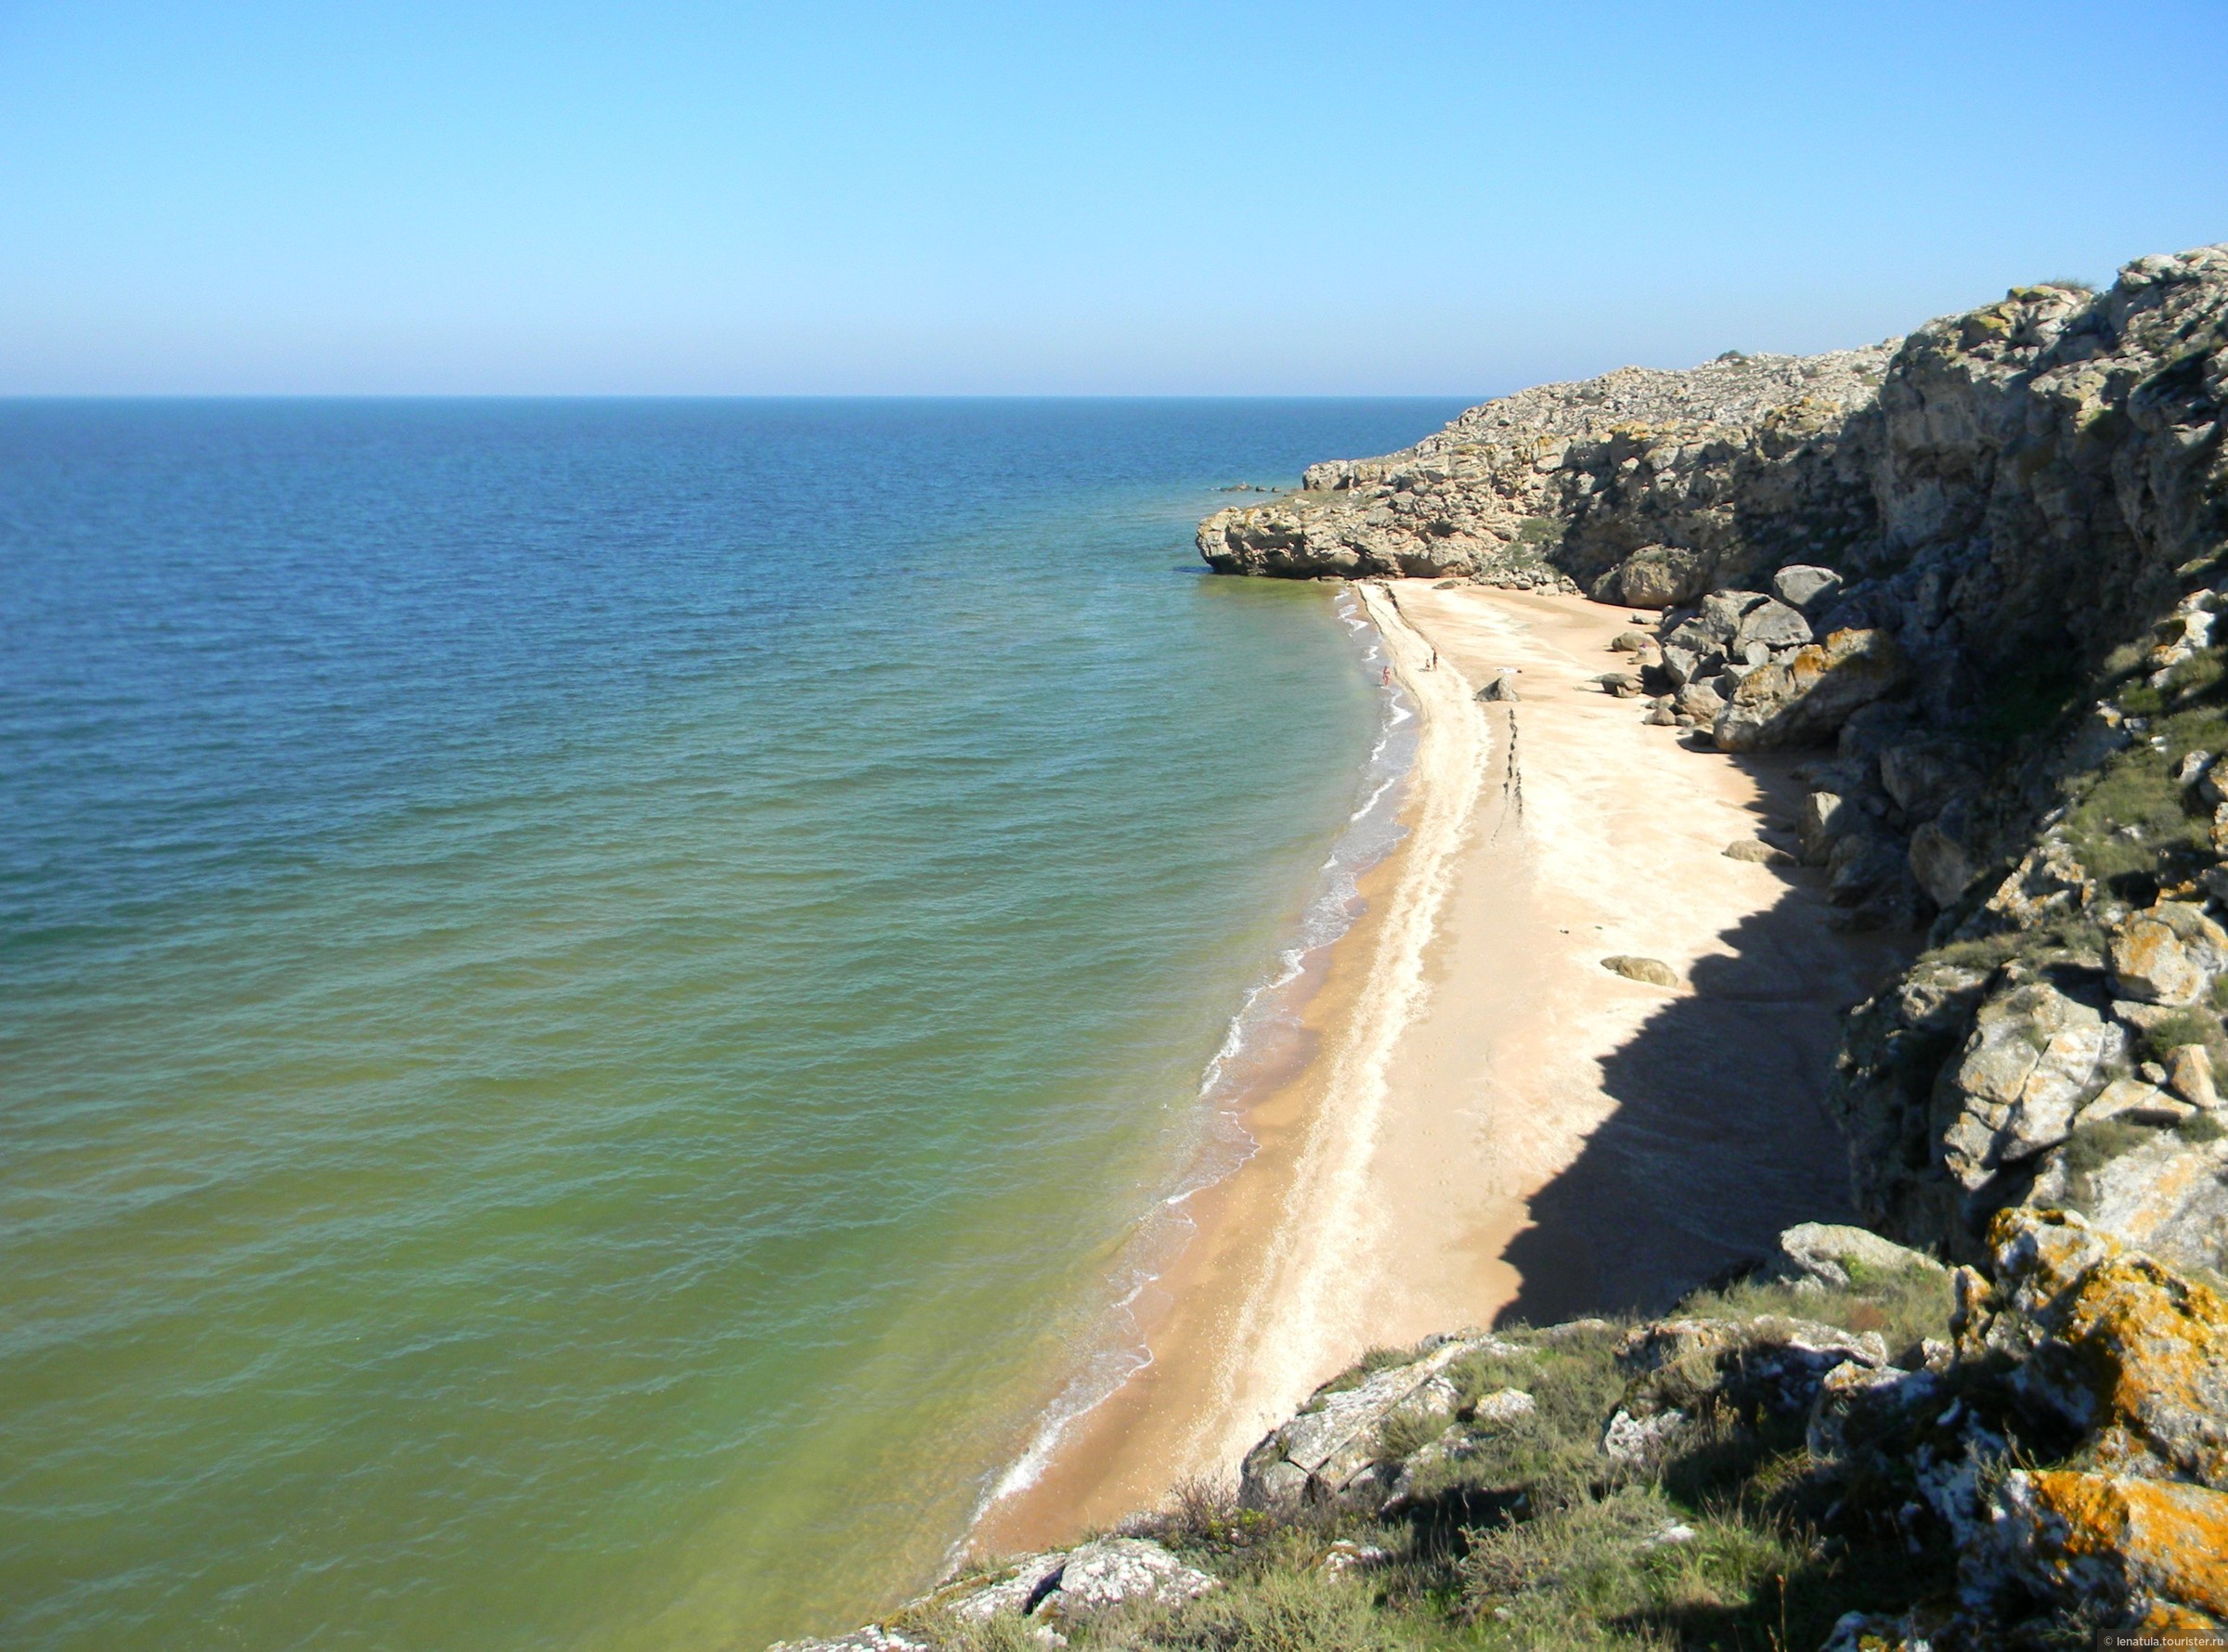 Уникальный дикий пляж в Крыму медленно погибает Тысячи, пляжи, Побережье, можно, число, которое, Генеральских, пляжах, территории, проблемой, может, менее, практически, только, недостатки, желающих, Официально, отдохнуть, каждым, годом